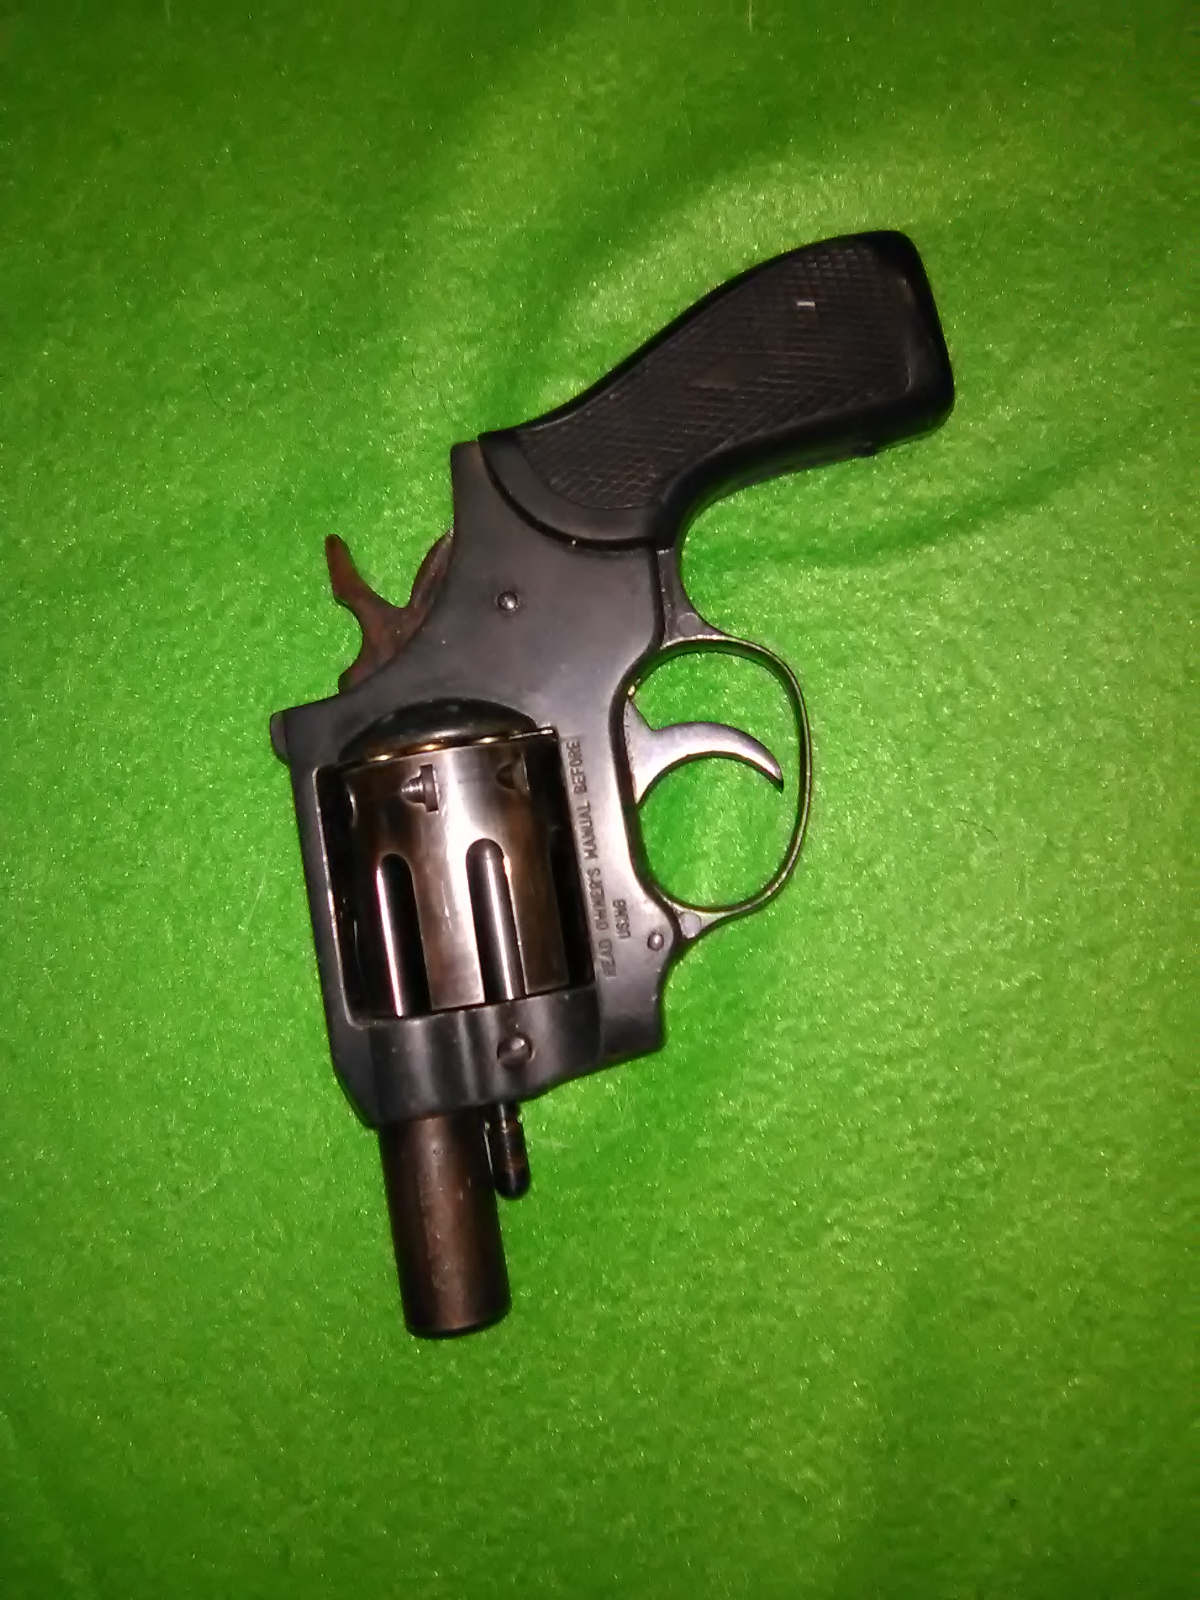 Fie Firearms Fie Arminius 8 Round 22 Mag Snub Nose Revolver 1 1 4 Barrel 22 Magnum For Sale At Gunauction Com 1716